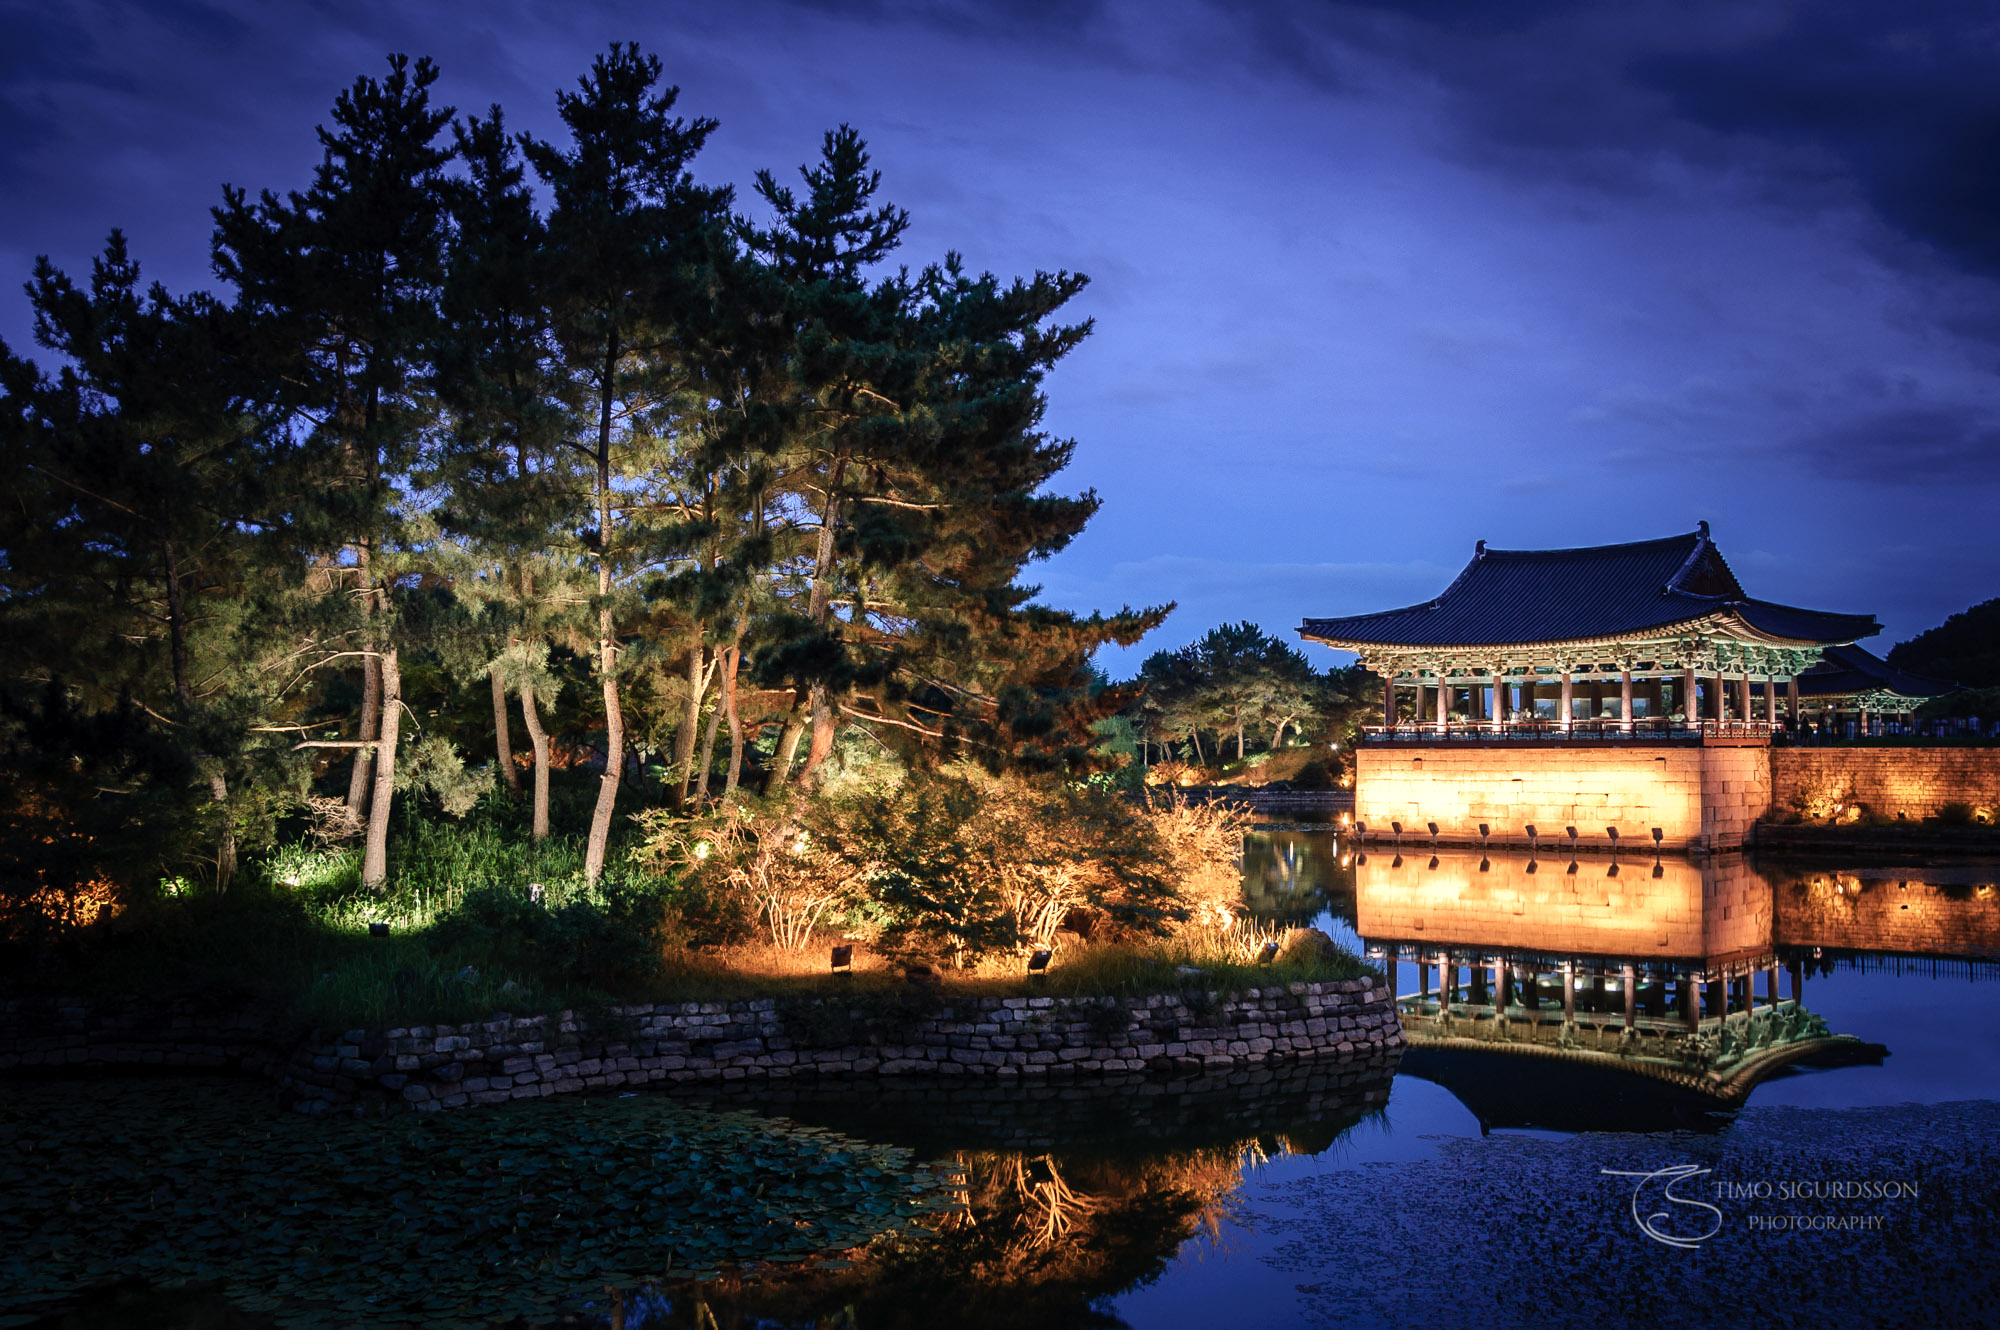 Anapji Pond, Gyeongju, South Korea. Palace reflection at night.